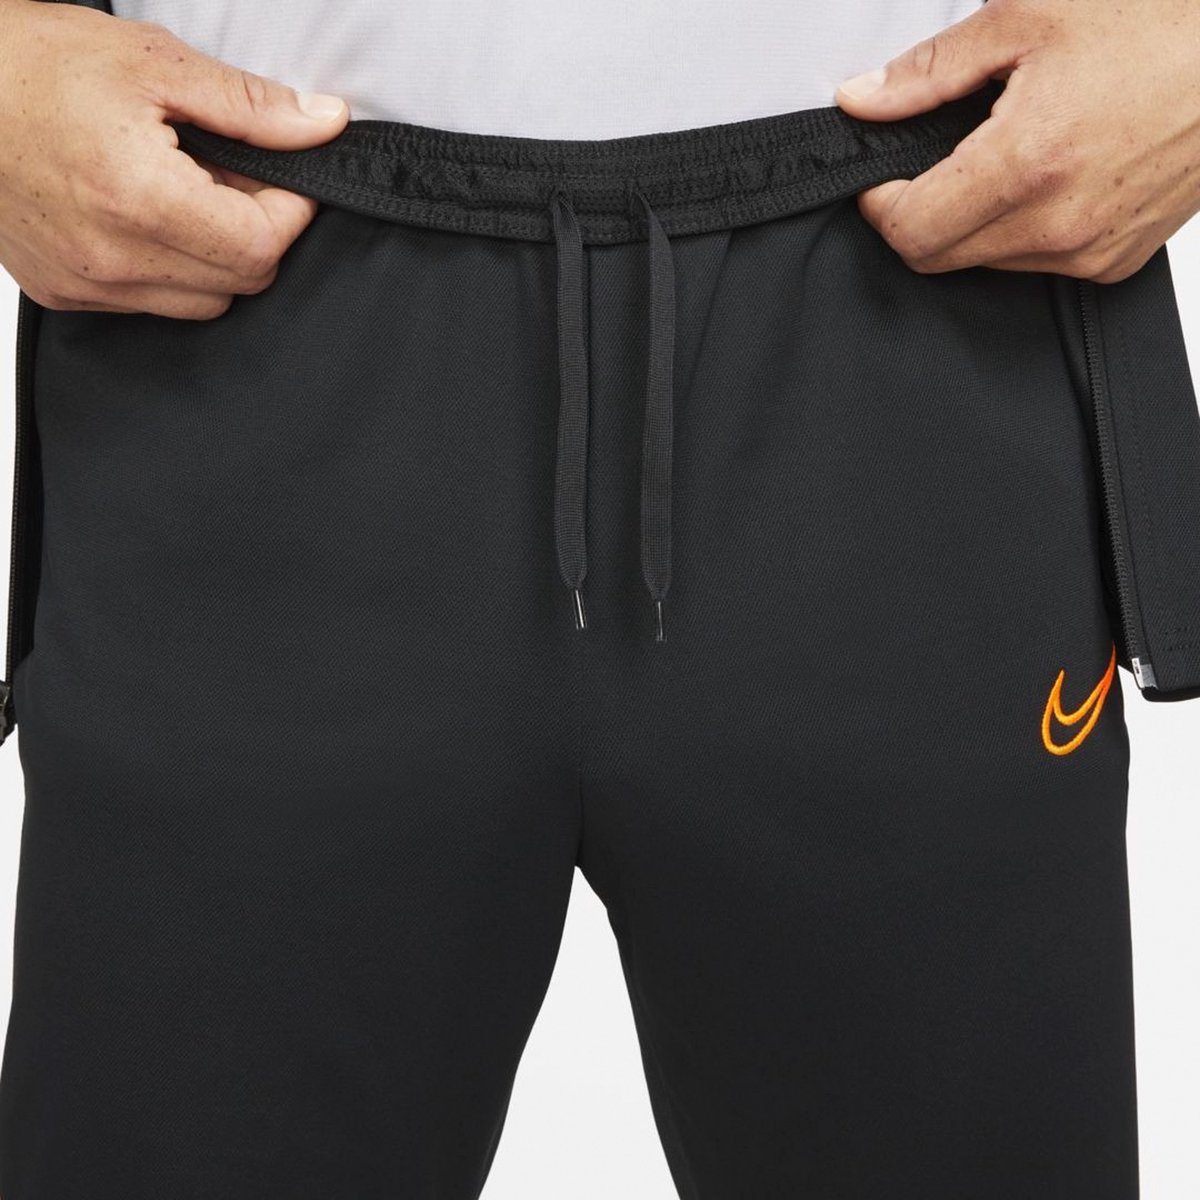 Survêtement Nike Dri- FIT Academy 21 - Taille S - Homme - Noir/Orange |  bol.com